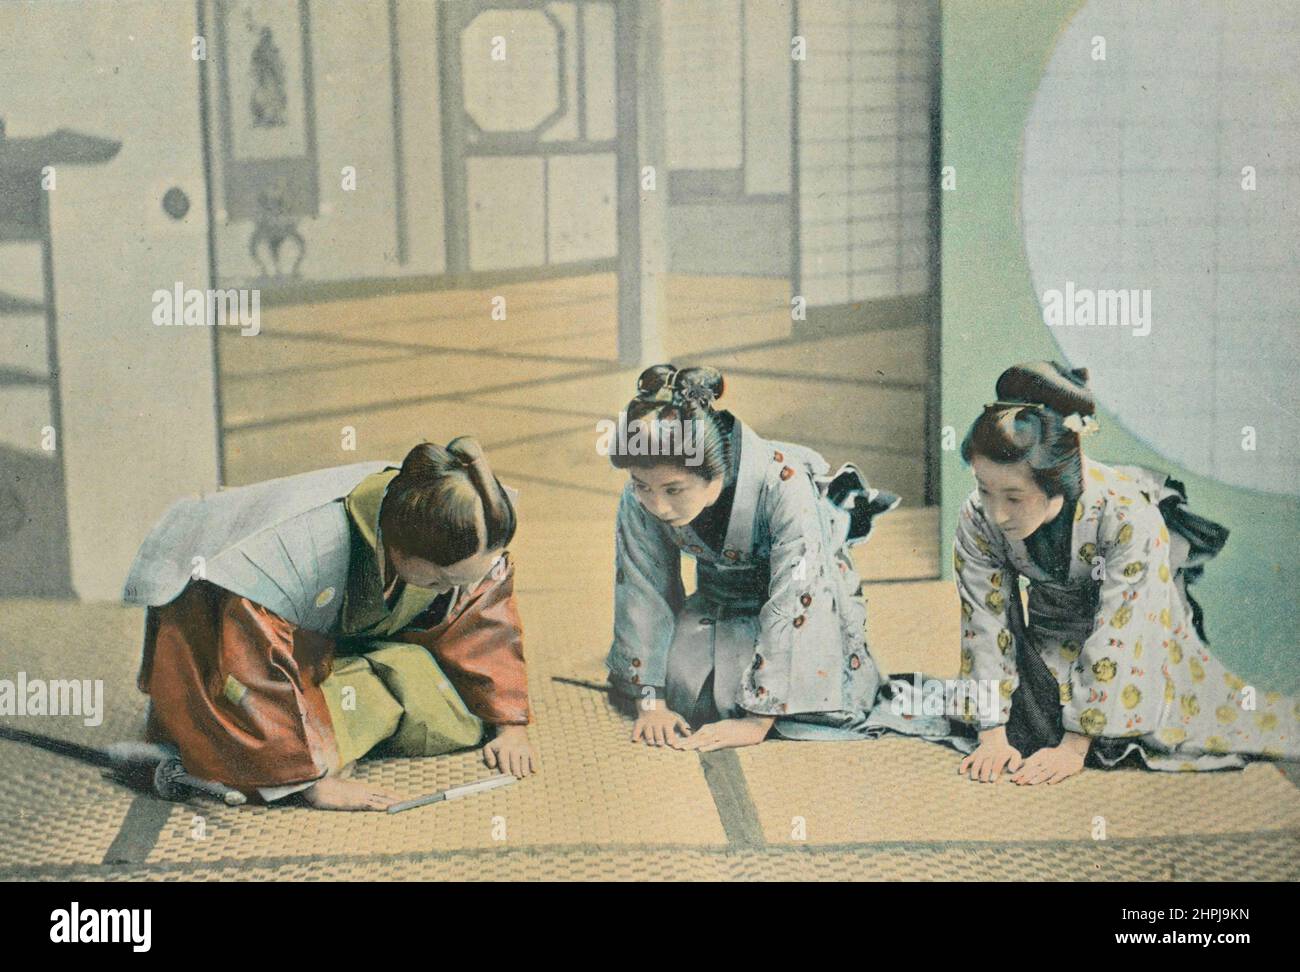 VISITE DE CÉRÉMONIE AU JAPON. Autour Du Monde Japon  Moeuers Usages 1895 - 1900  (5)  - 19 th century french colored photography print Stock Photo